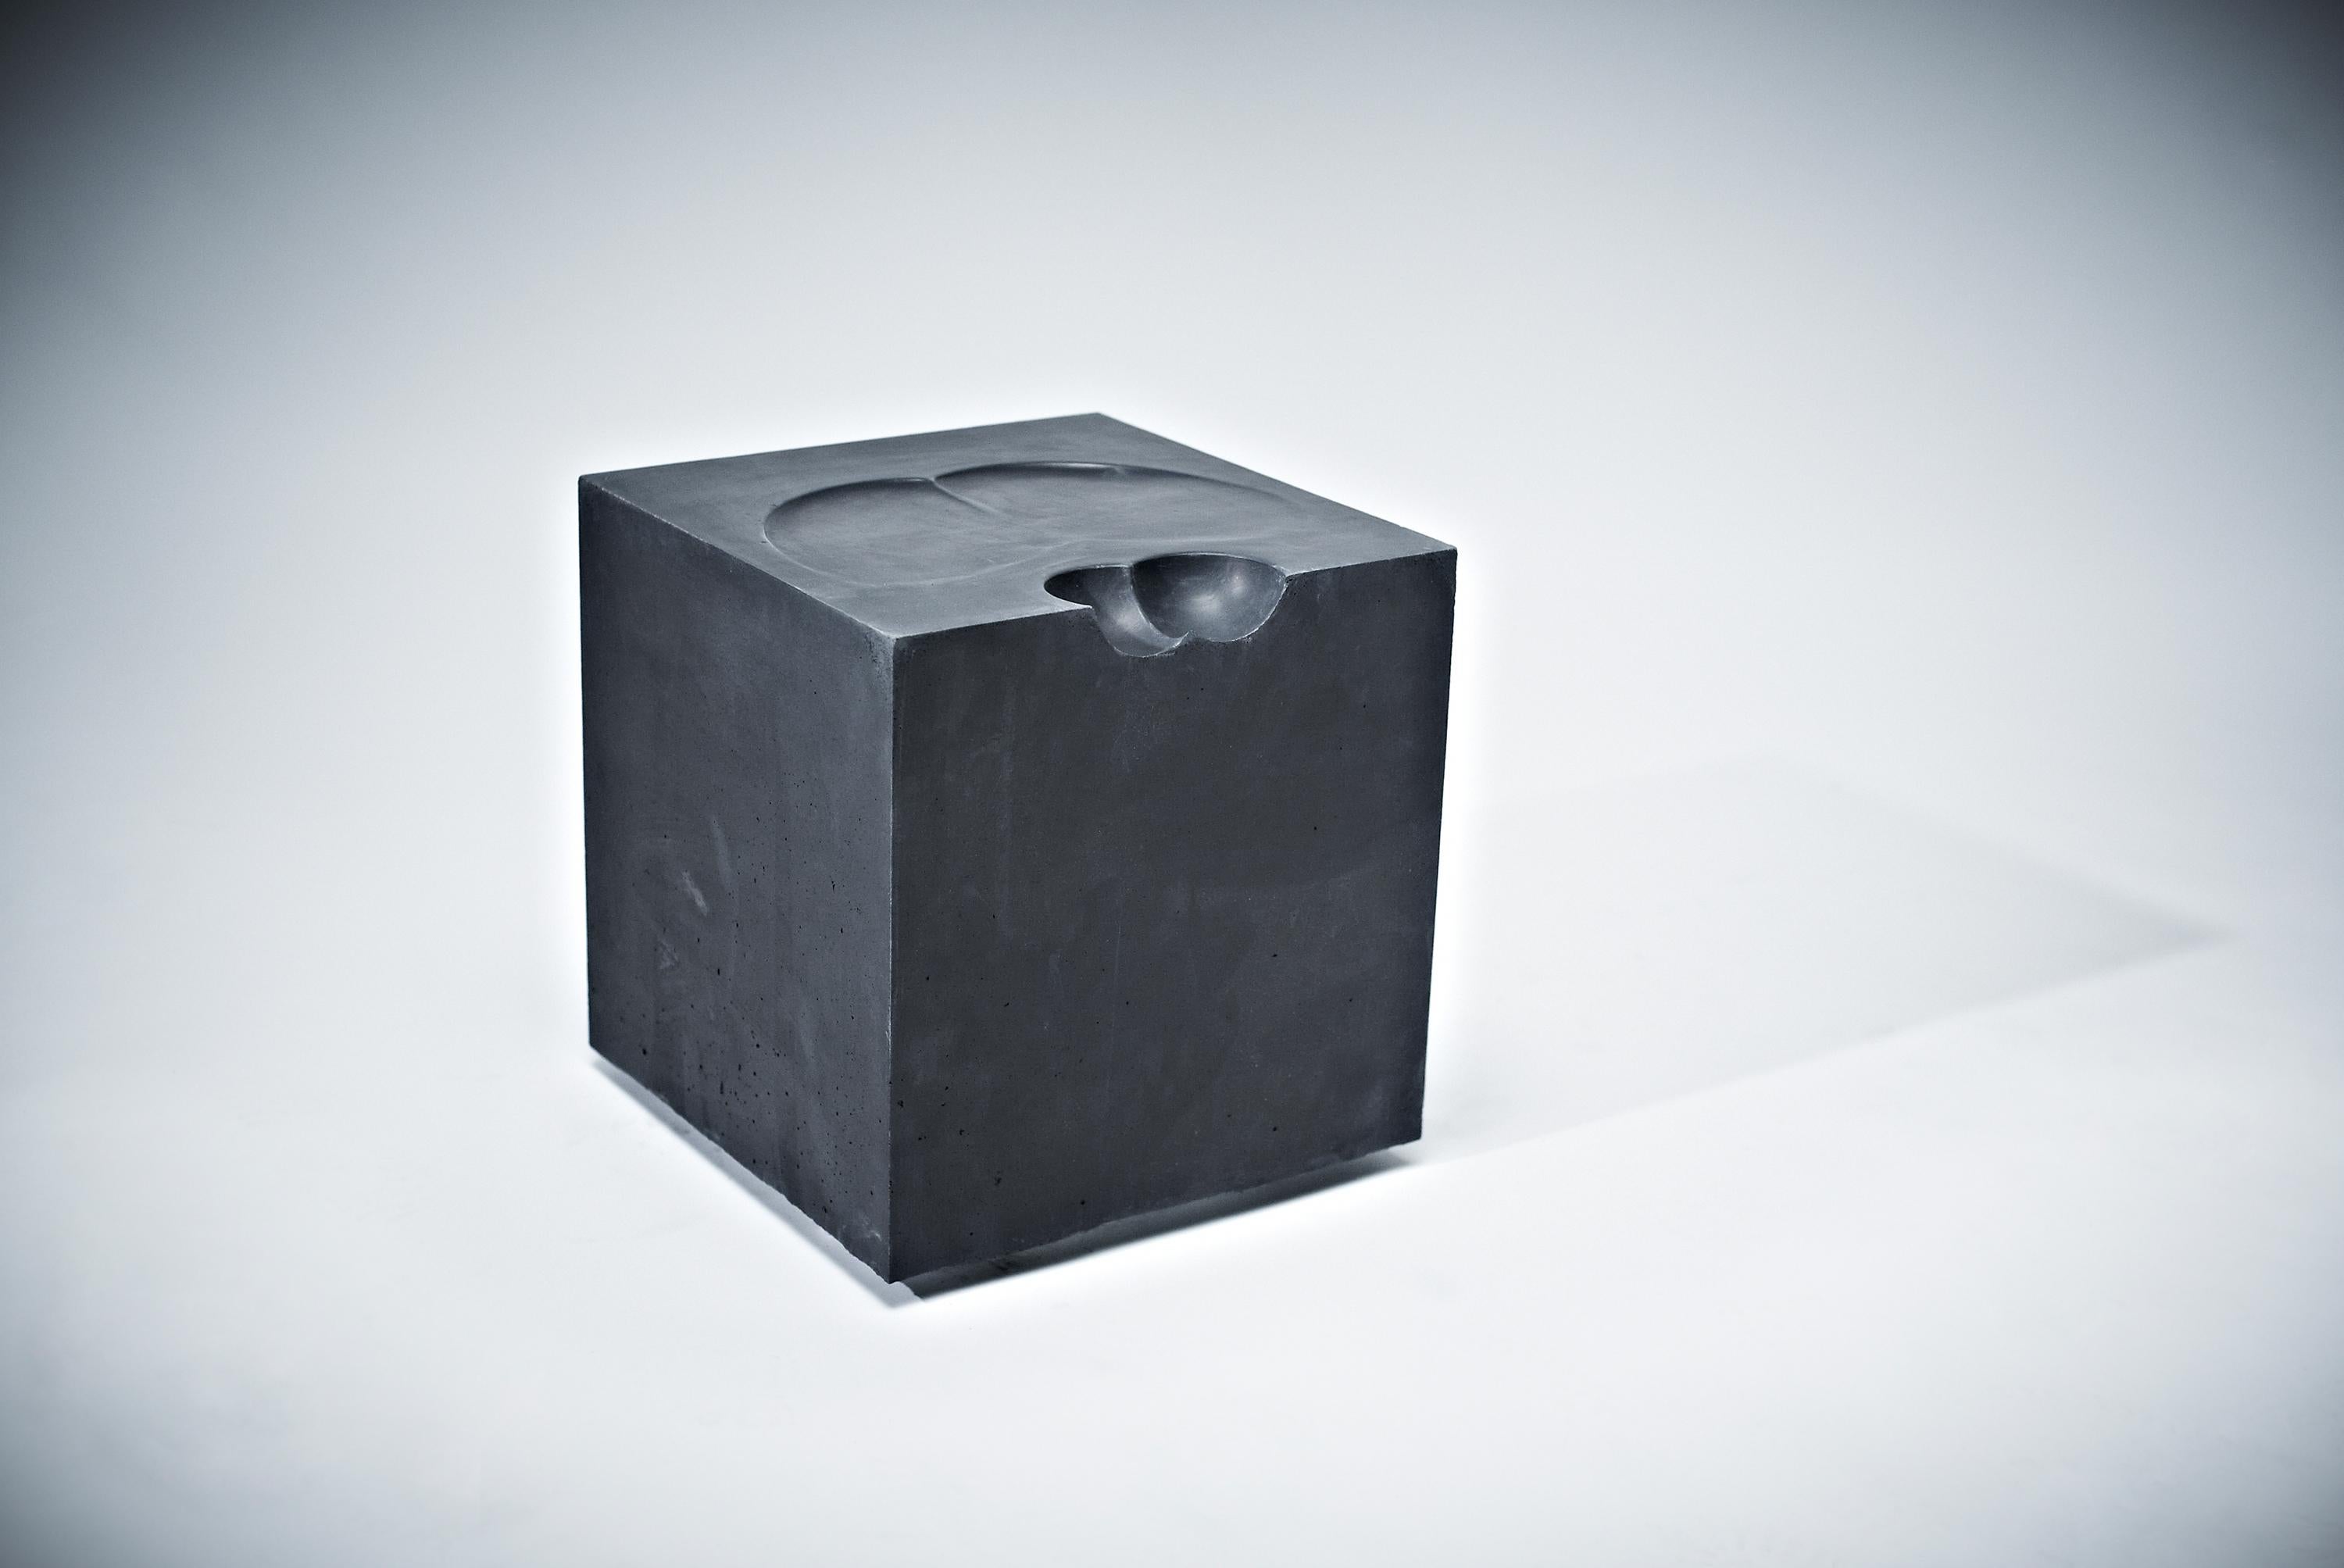 Tabouret Bollocks par Studio Pin
Dimensions : D 39 x L 39 x H 46 cm 
Matériaux : béton coulé, polystyrène. 
Poids : 50 kg

Une chaise pour 